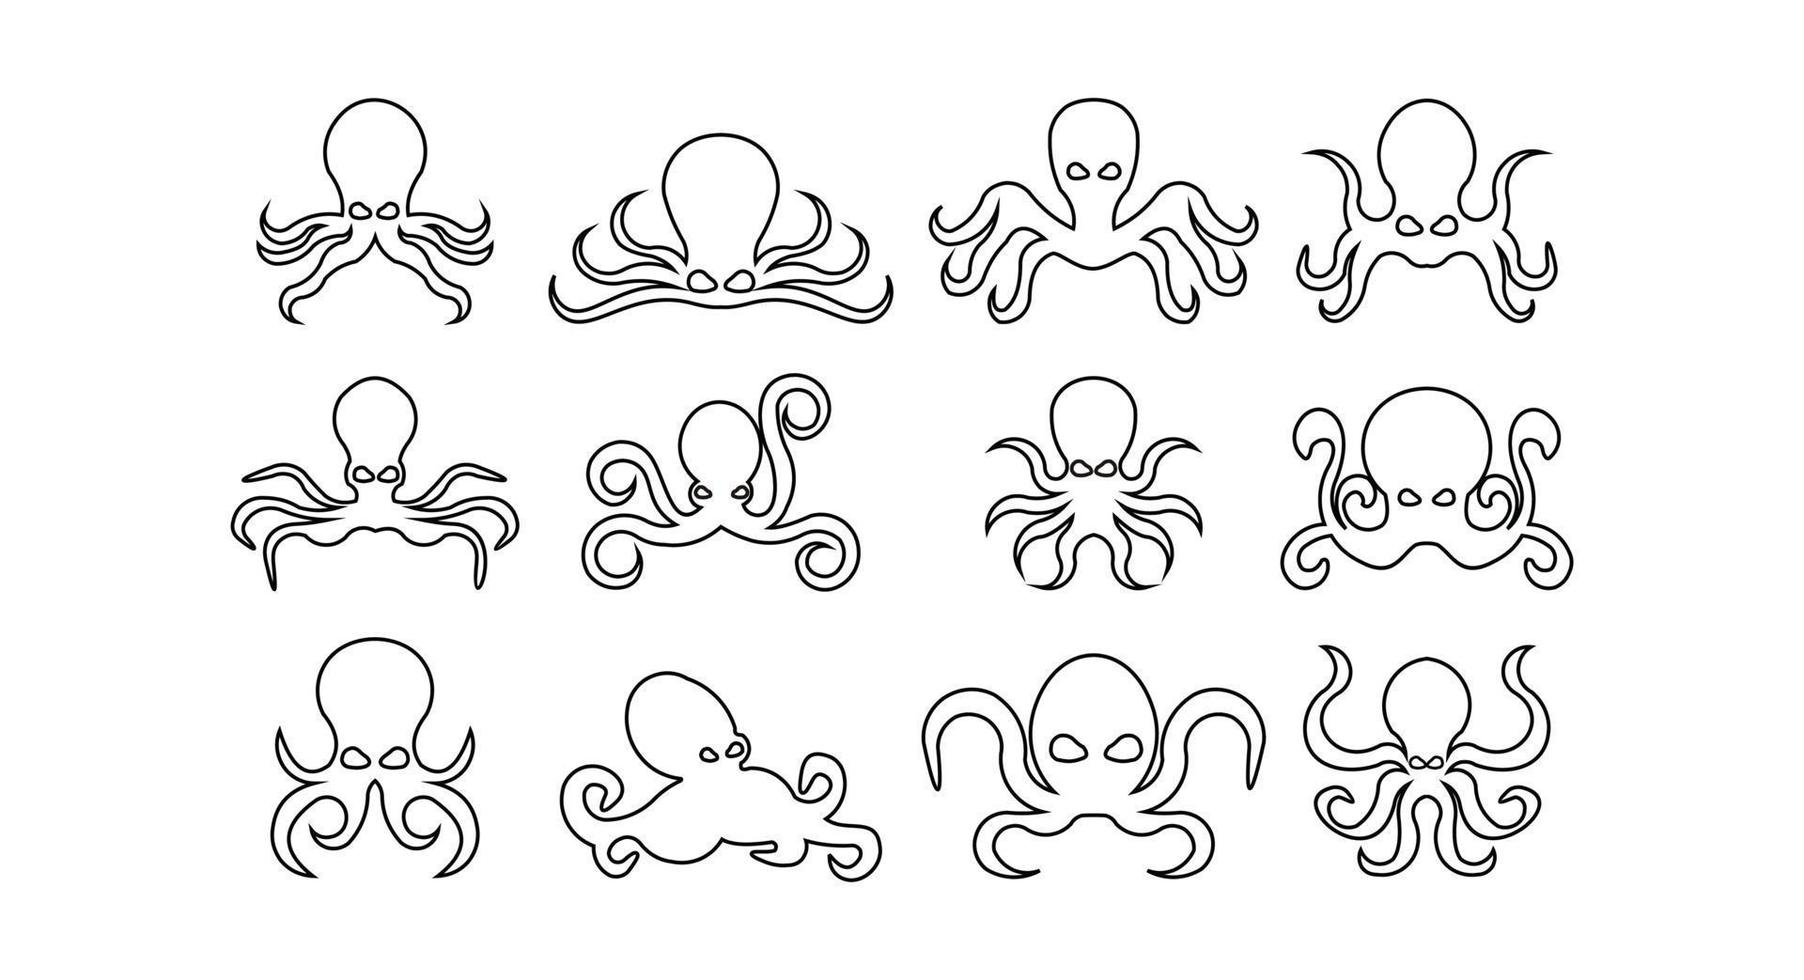 set van zeevruchten octopus pictogrammen, octopus lijn pictogram geïsoleerd op een witte achtergrond. vector